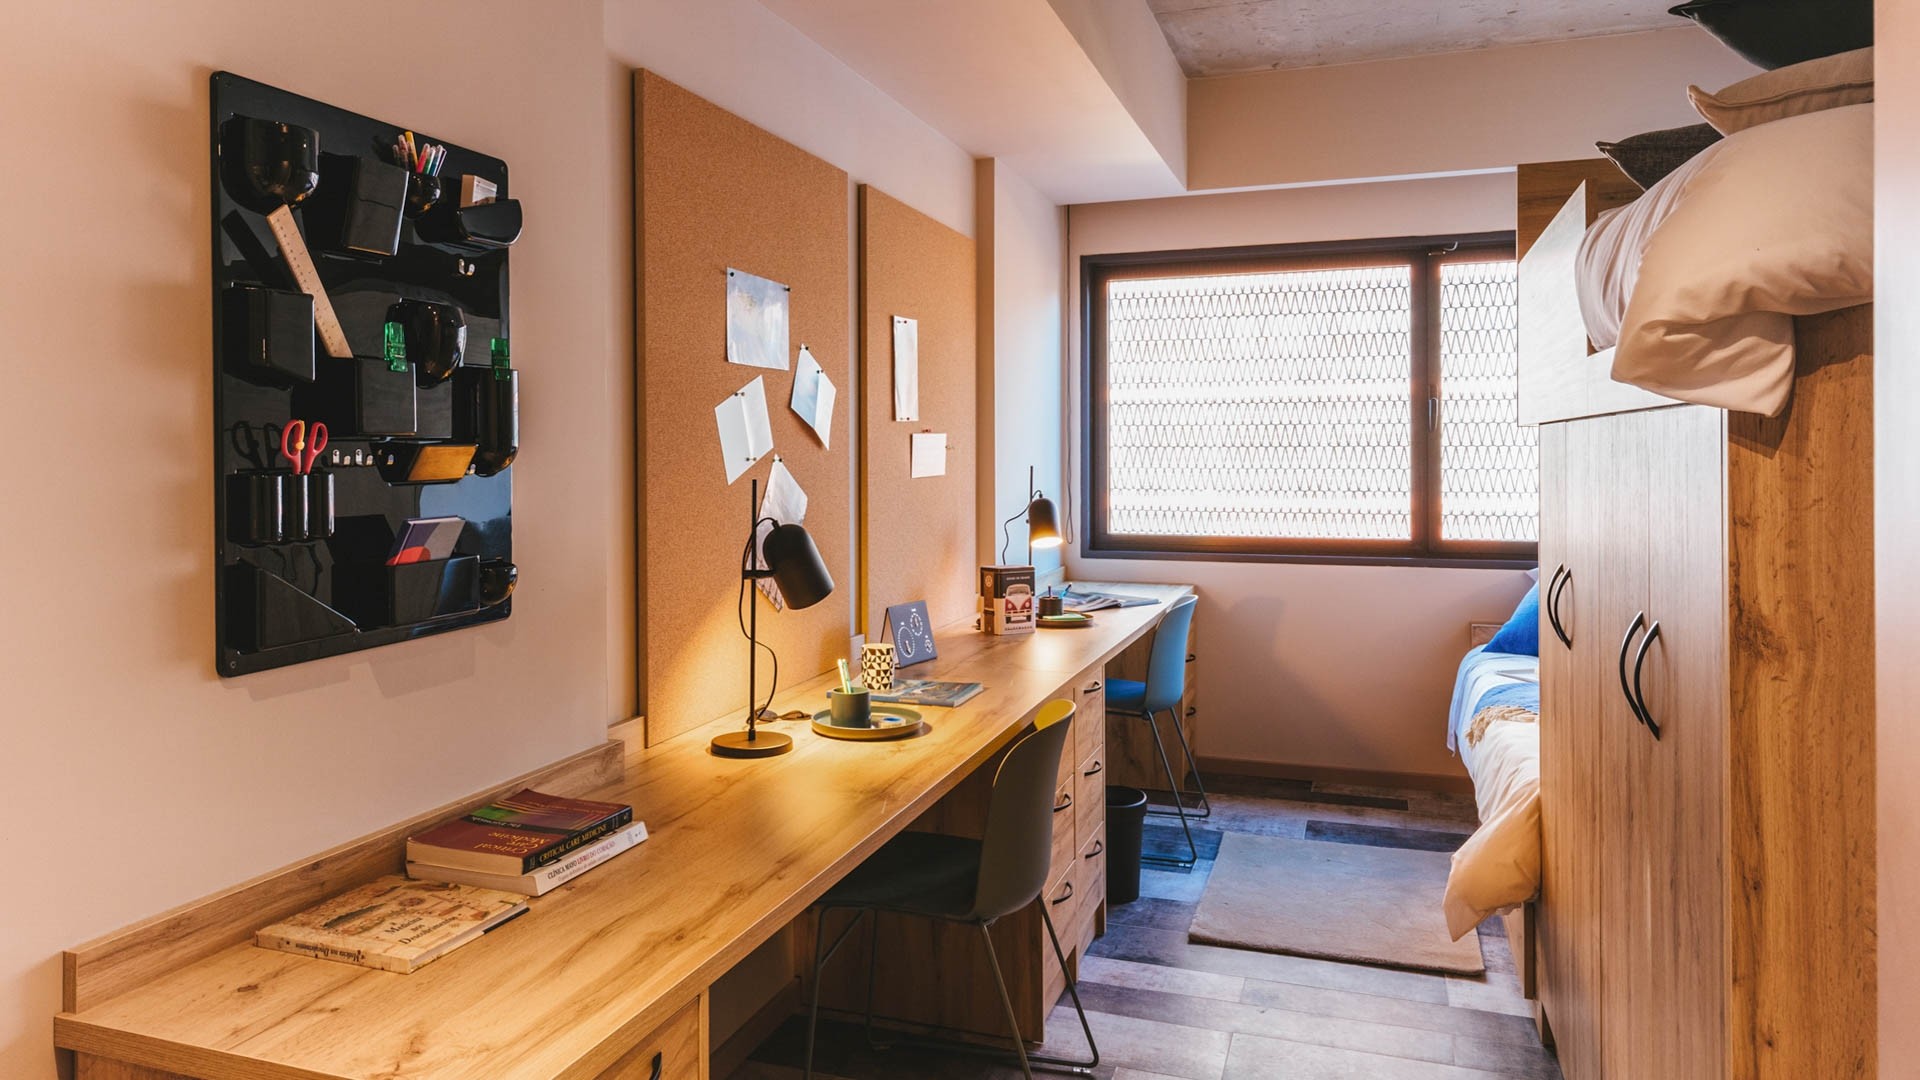 Chambre à louer dans un appartement en colocation à Coimbra